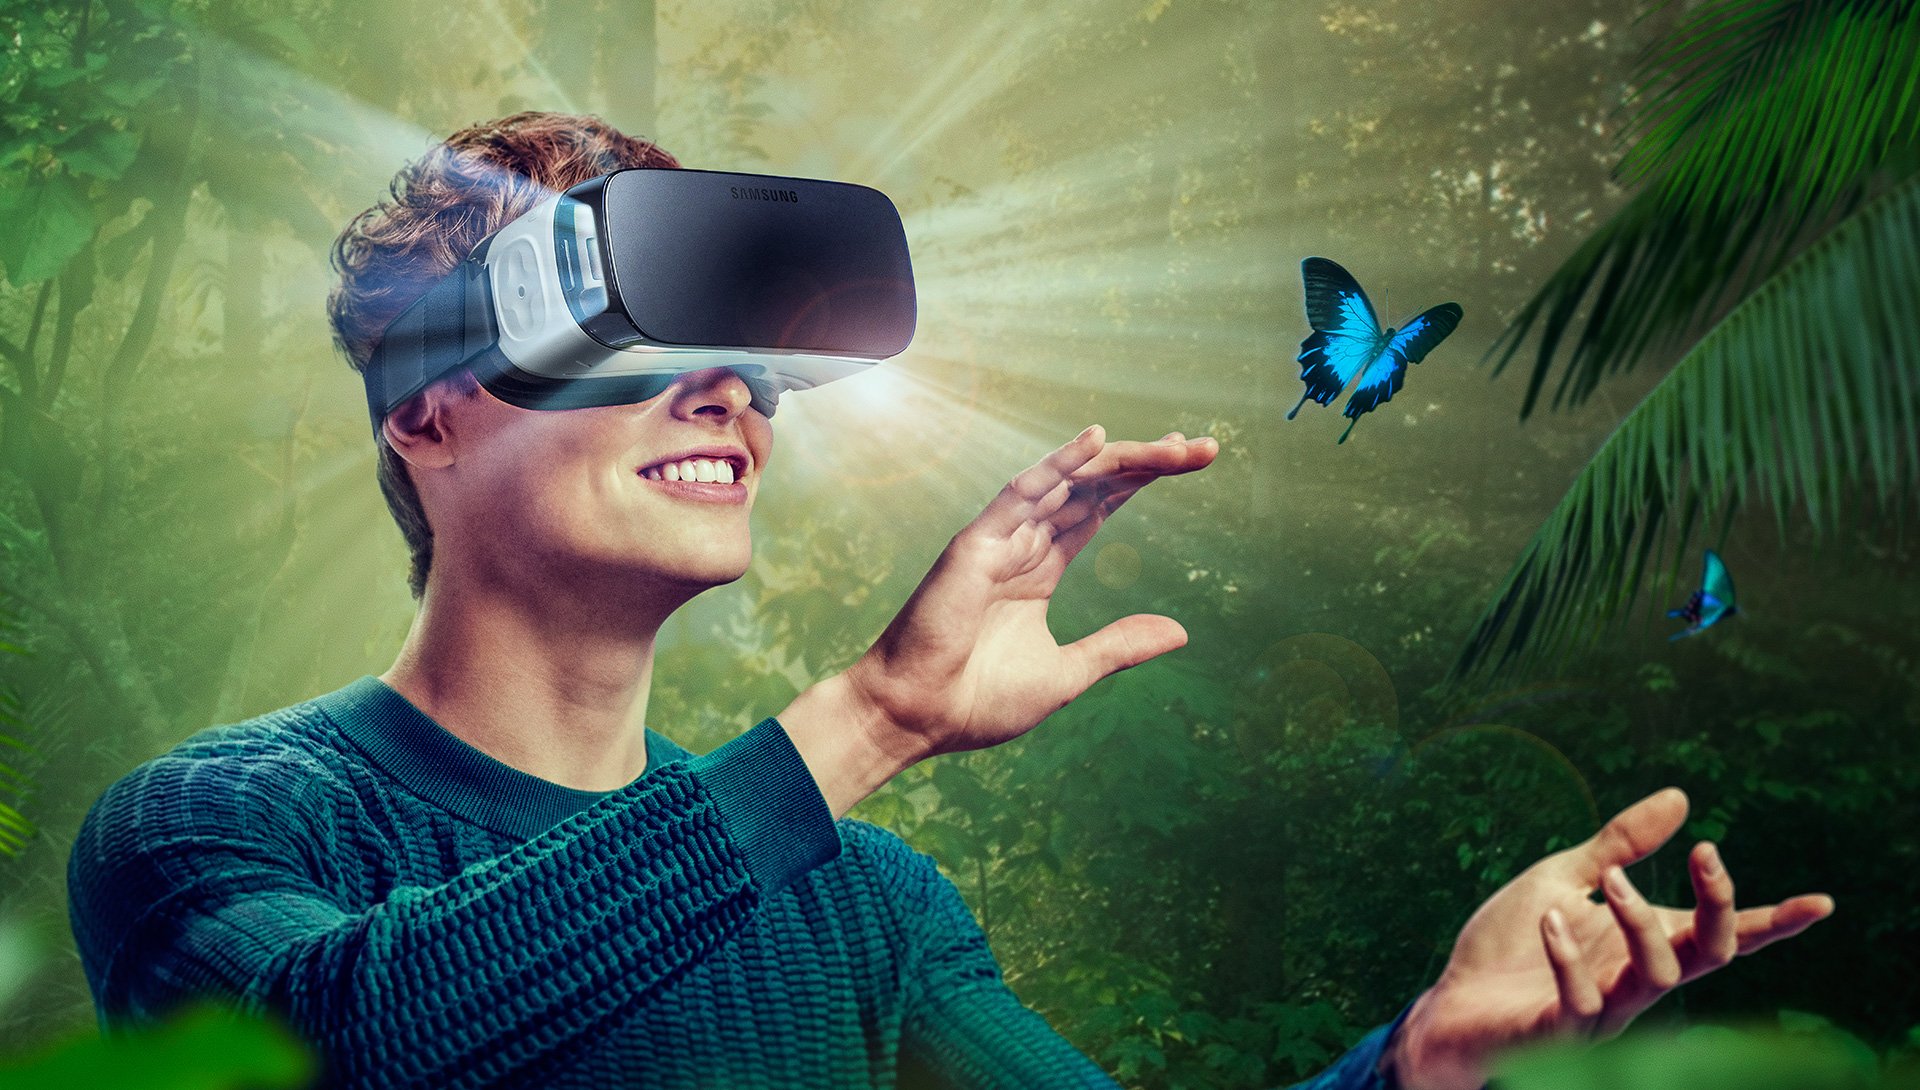 Цифровое развлечение. VR виртуальная реальность. Визуальная реальность. Иртуальная реальность. Очки виртуальной реальности на человеке.